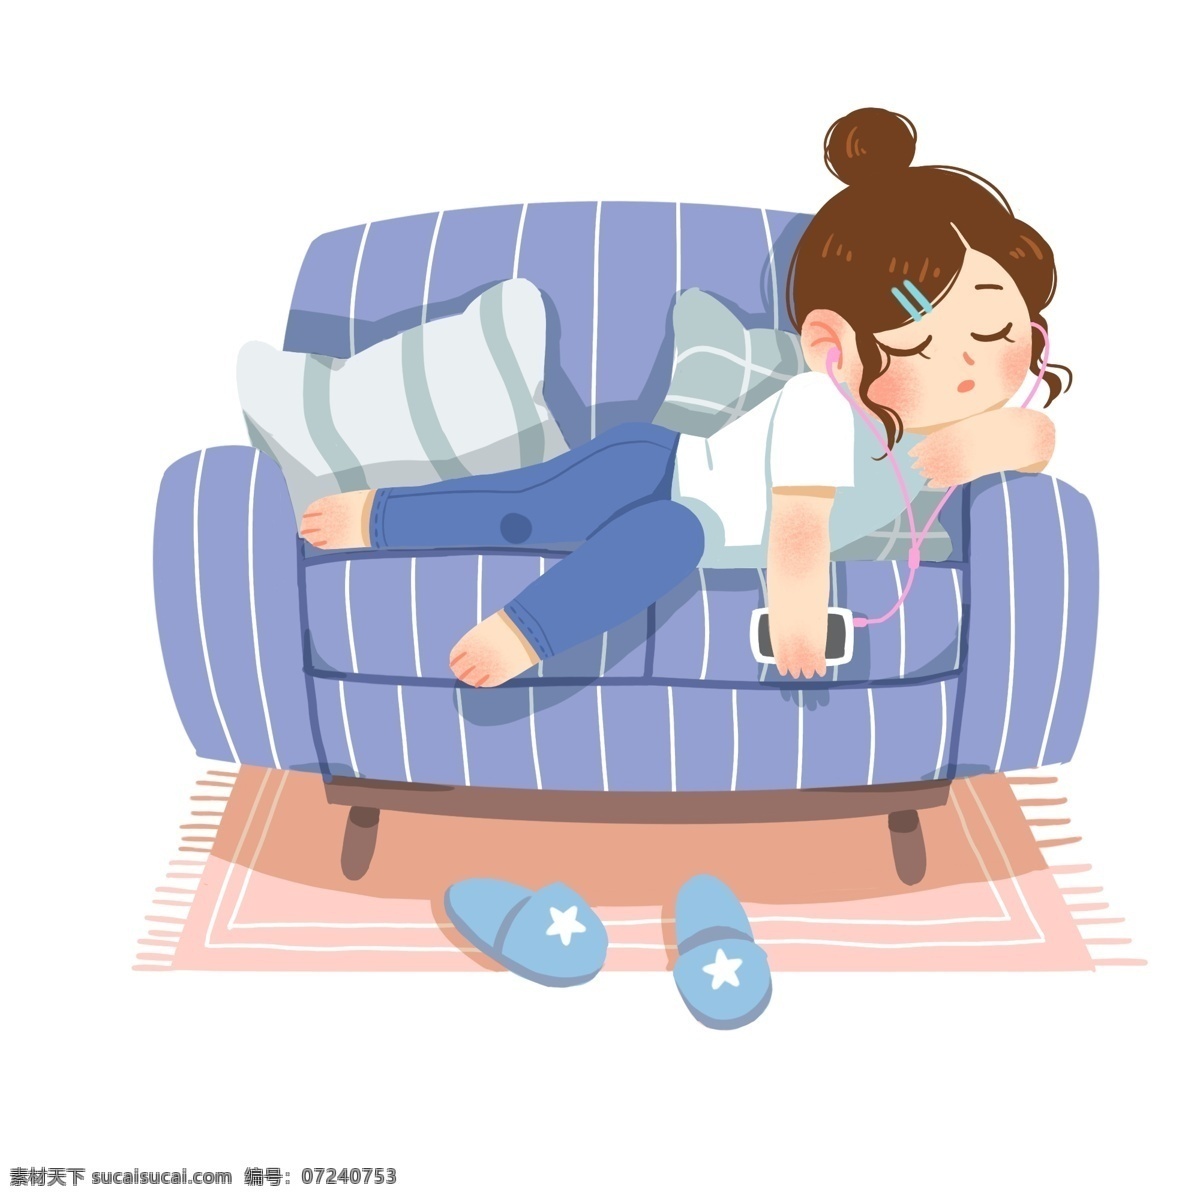 沙发 睡觉 女孩 世界 睡眠 日 插画 蓝色的沙发 漂亮的小女孩 蓝色的拖鞋 卡通人物